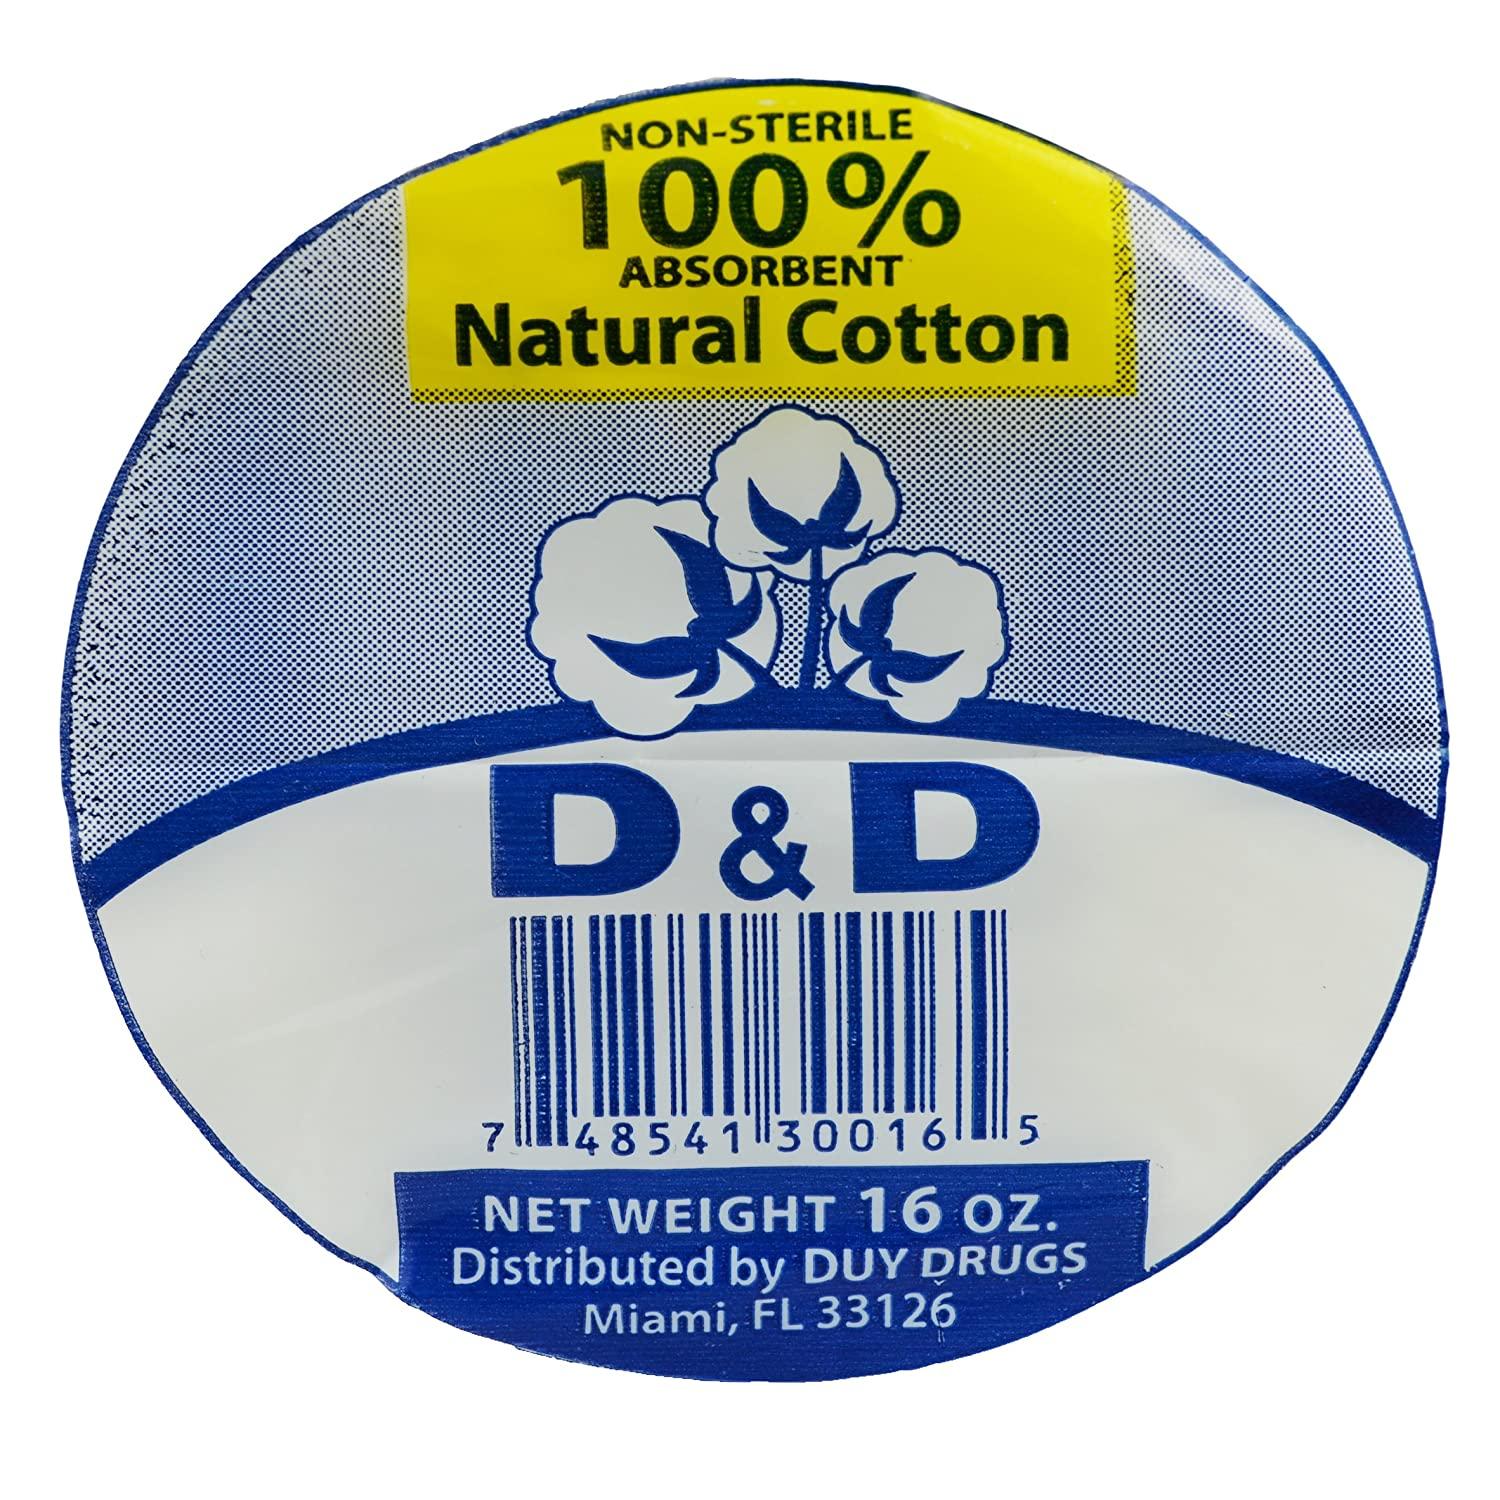 Cotton Roll 100% Absorbent Non-Sterile Natural Corrton 16oz